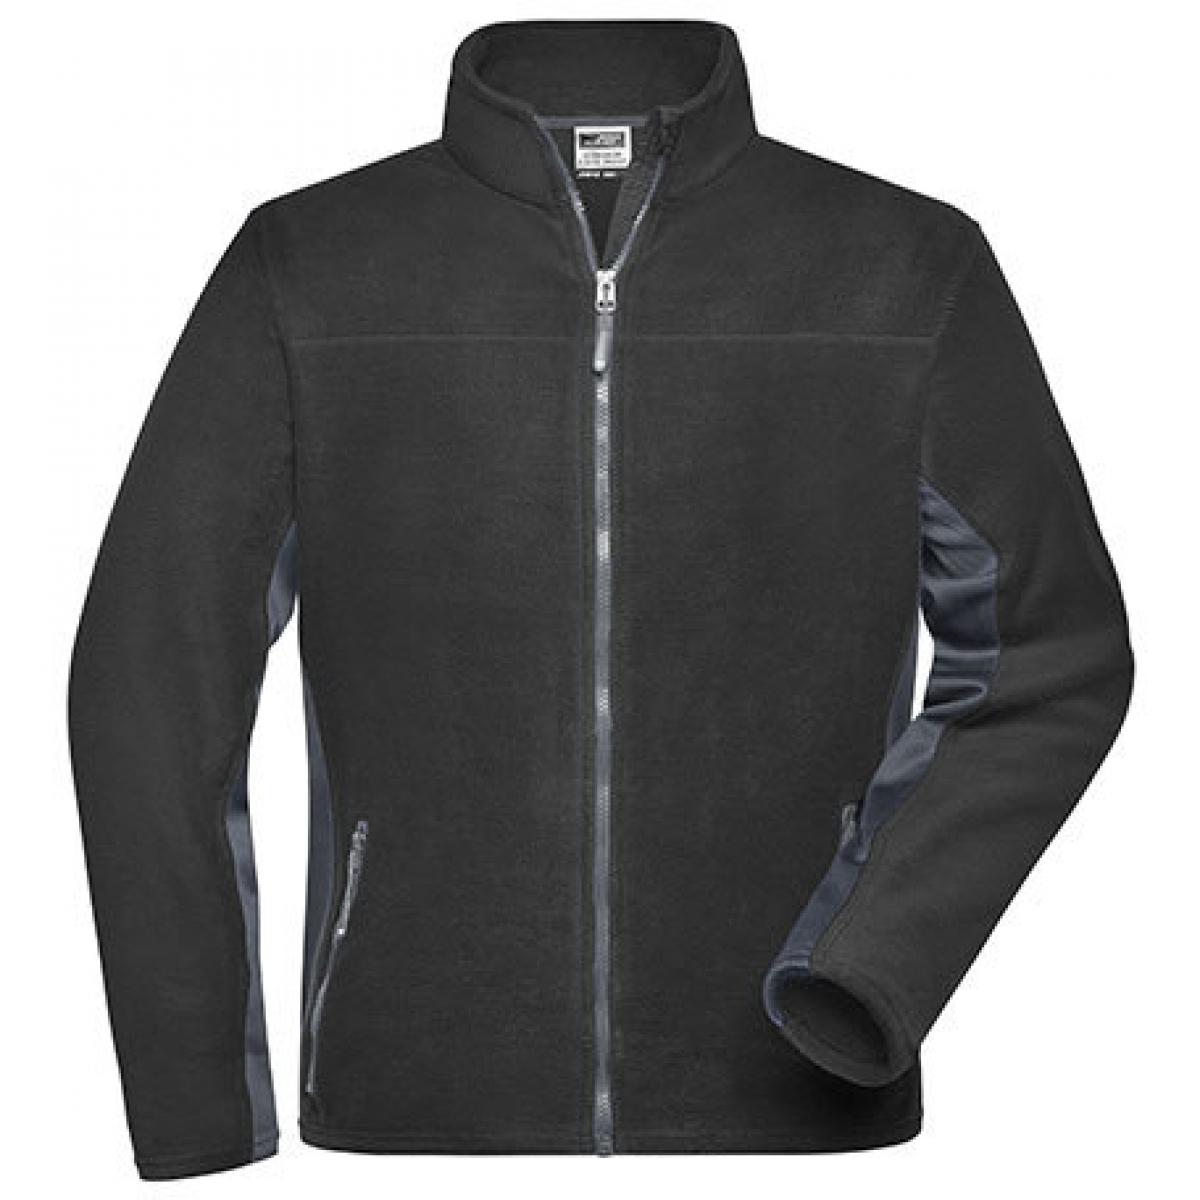 Hersteller: James+Nicholson Herstellernummer: JN842 Artikelbezeichnung: Herren Jacke, Men‘s Workwear Fleece Jacket -STRONG- Farbe: Black/Carbon